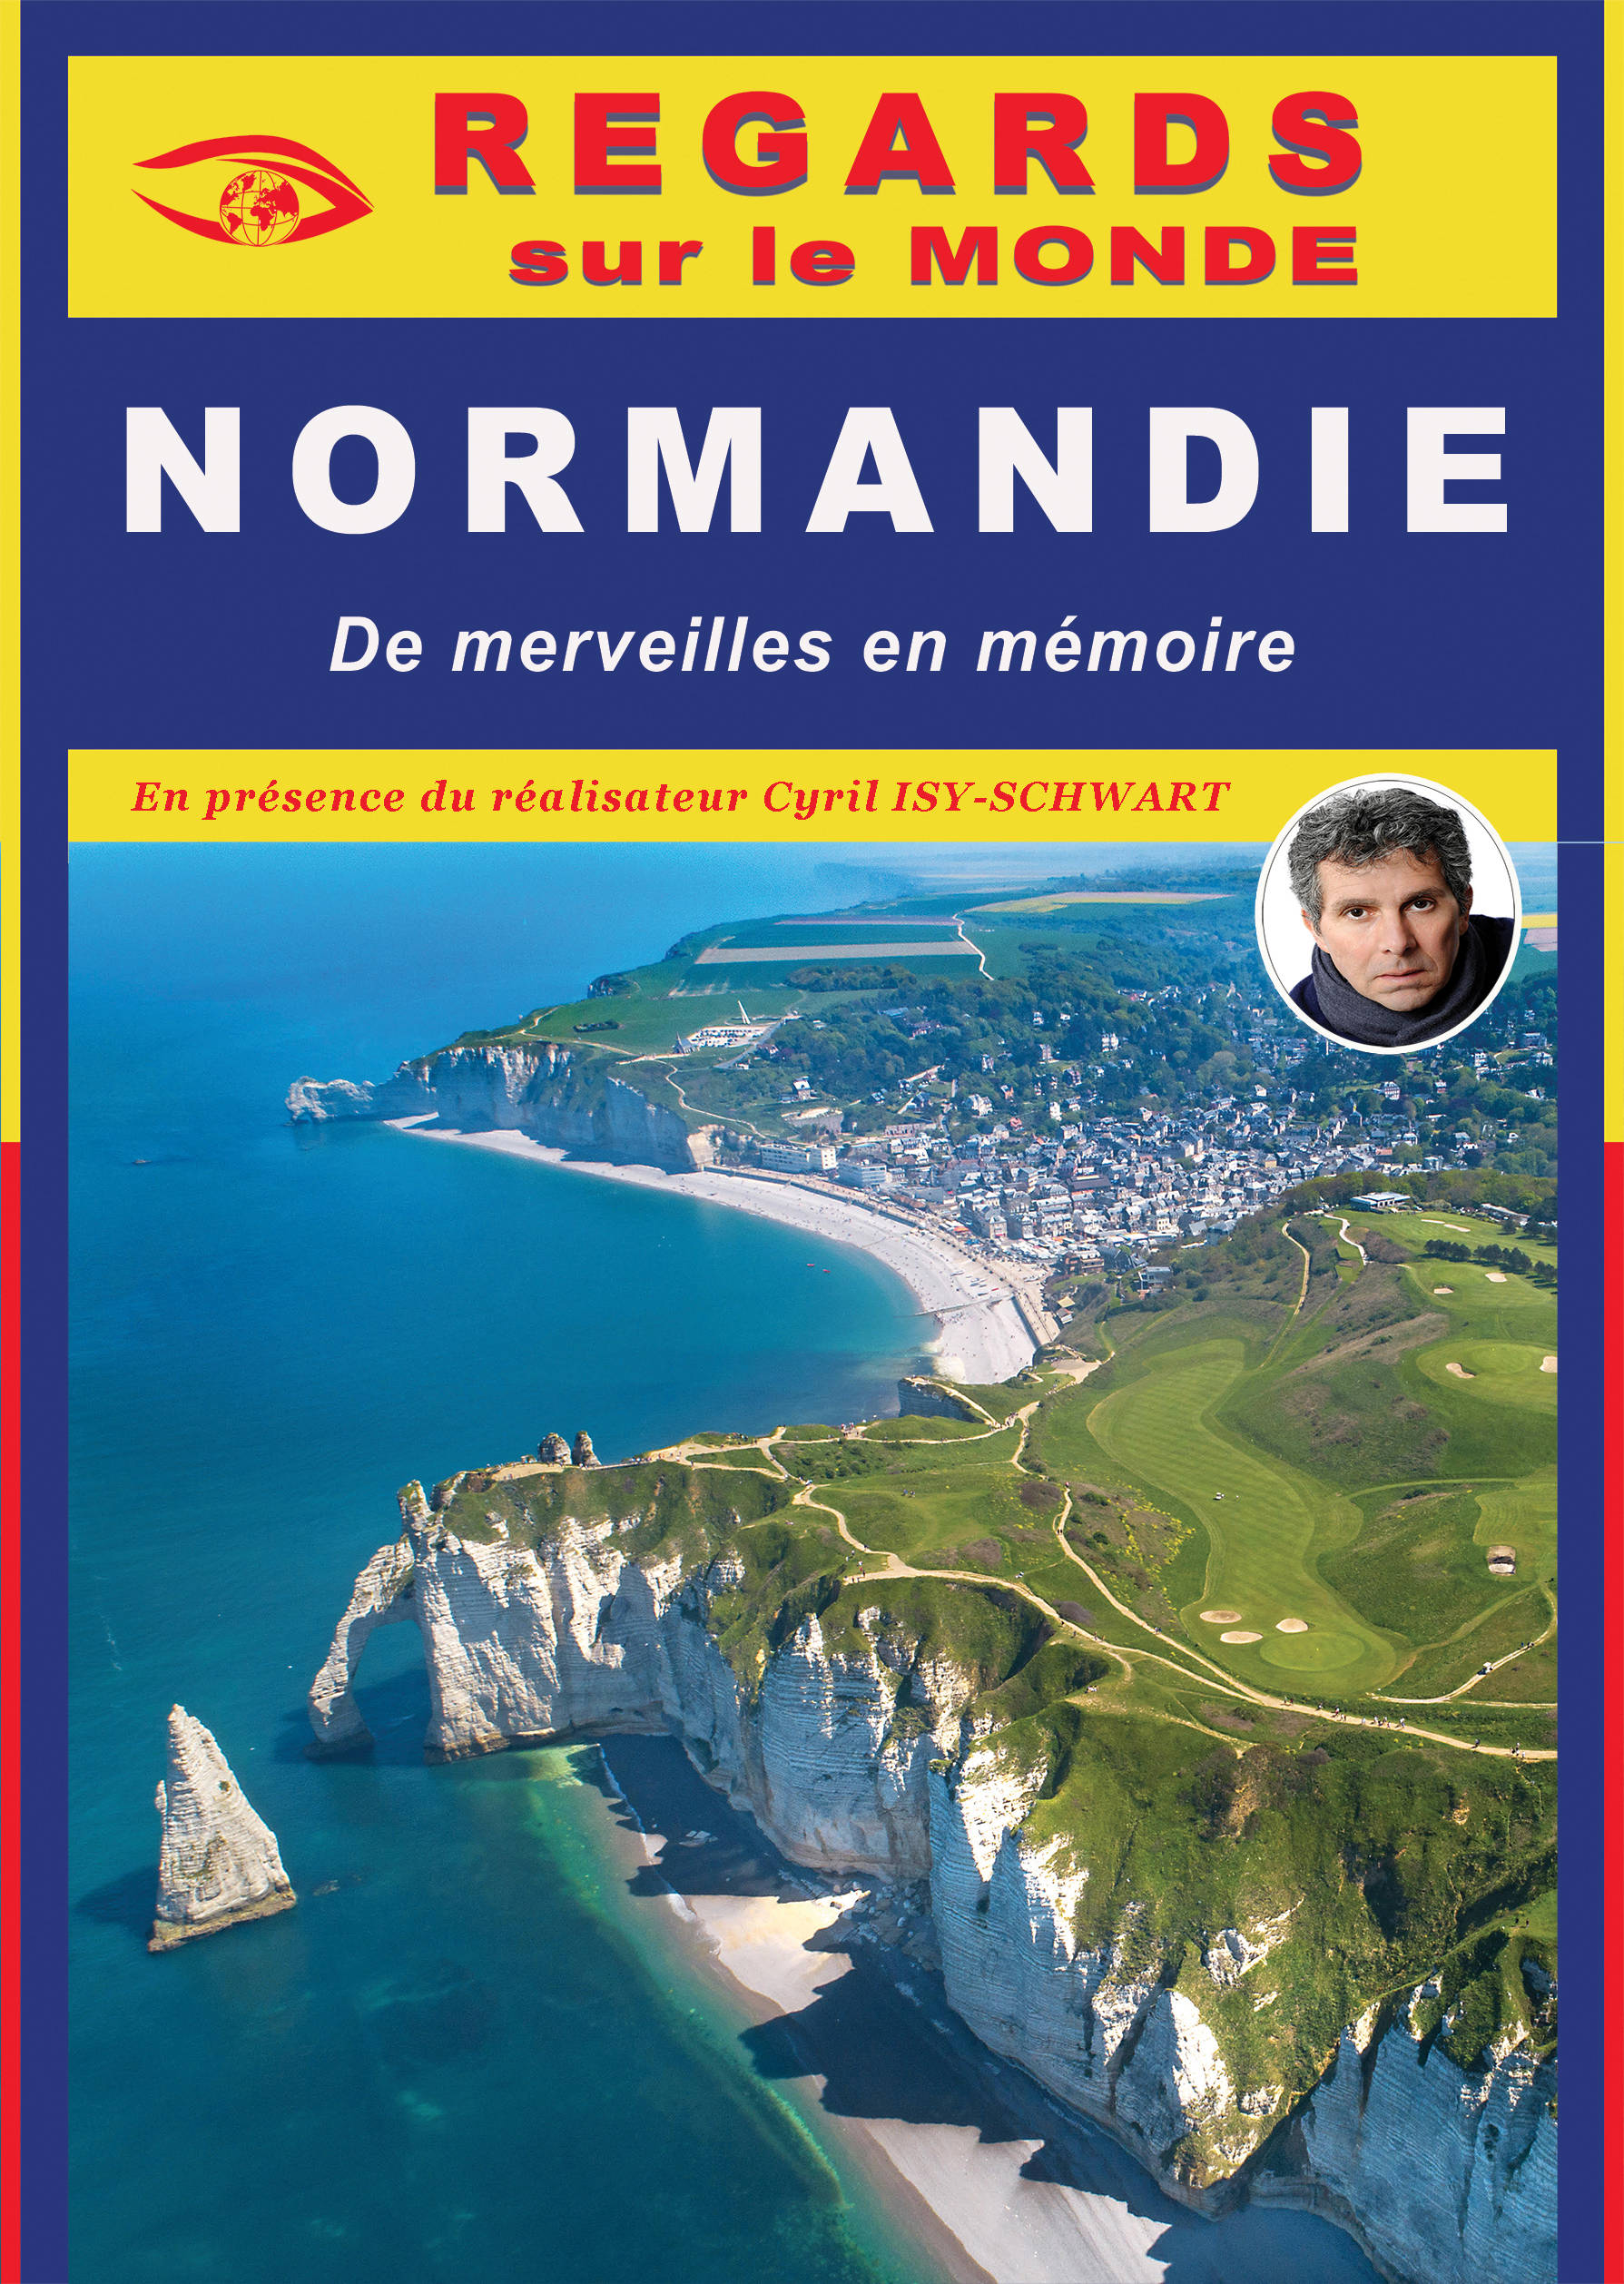 NORMANDIE, De merveilles en mémoire - Film de Cyril Isy-Schwart